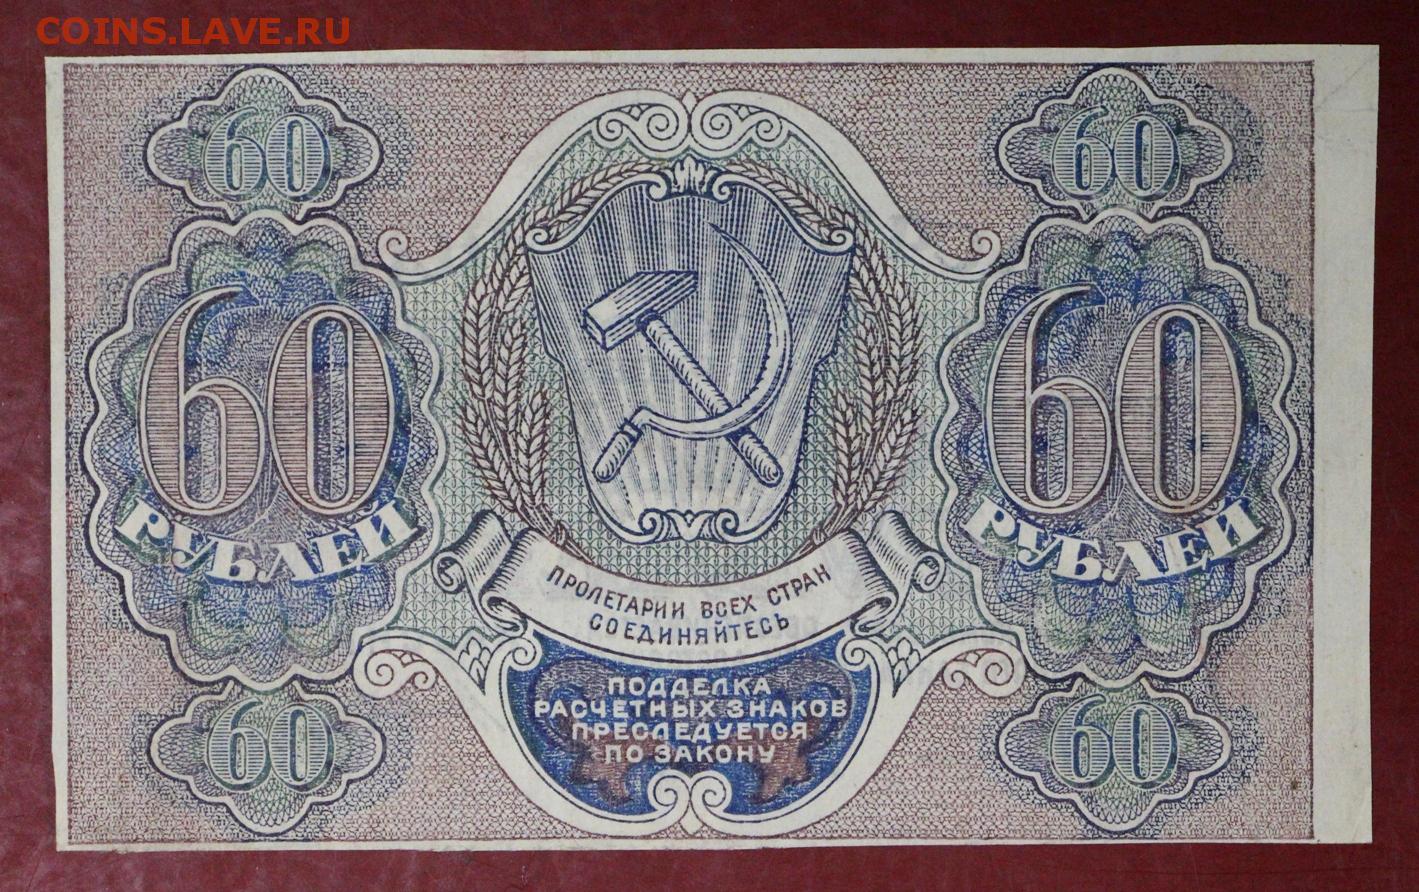 16 60 в рублях. Расчётный знак 60 рублей 1919 года. 60 Рублей фотографий. 60 Рублей 1919 лист. 60 Рублей картинка.